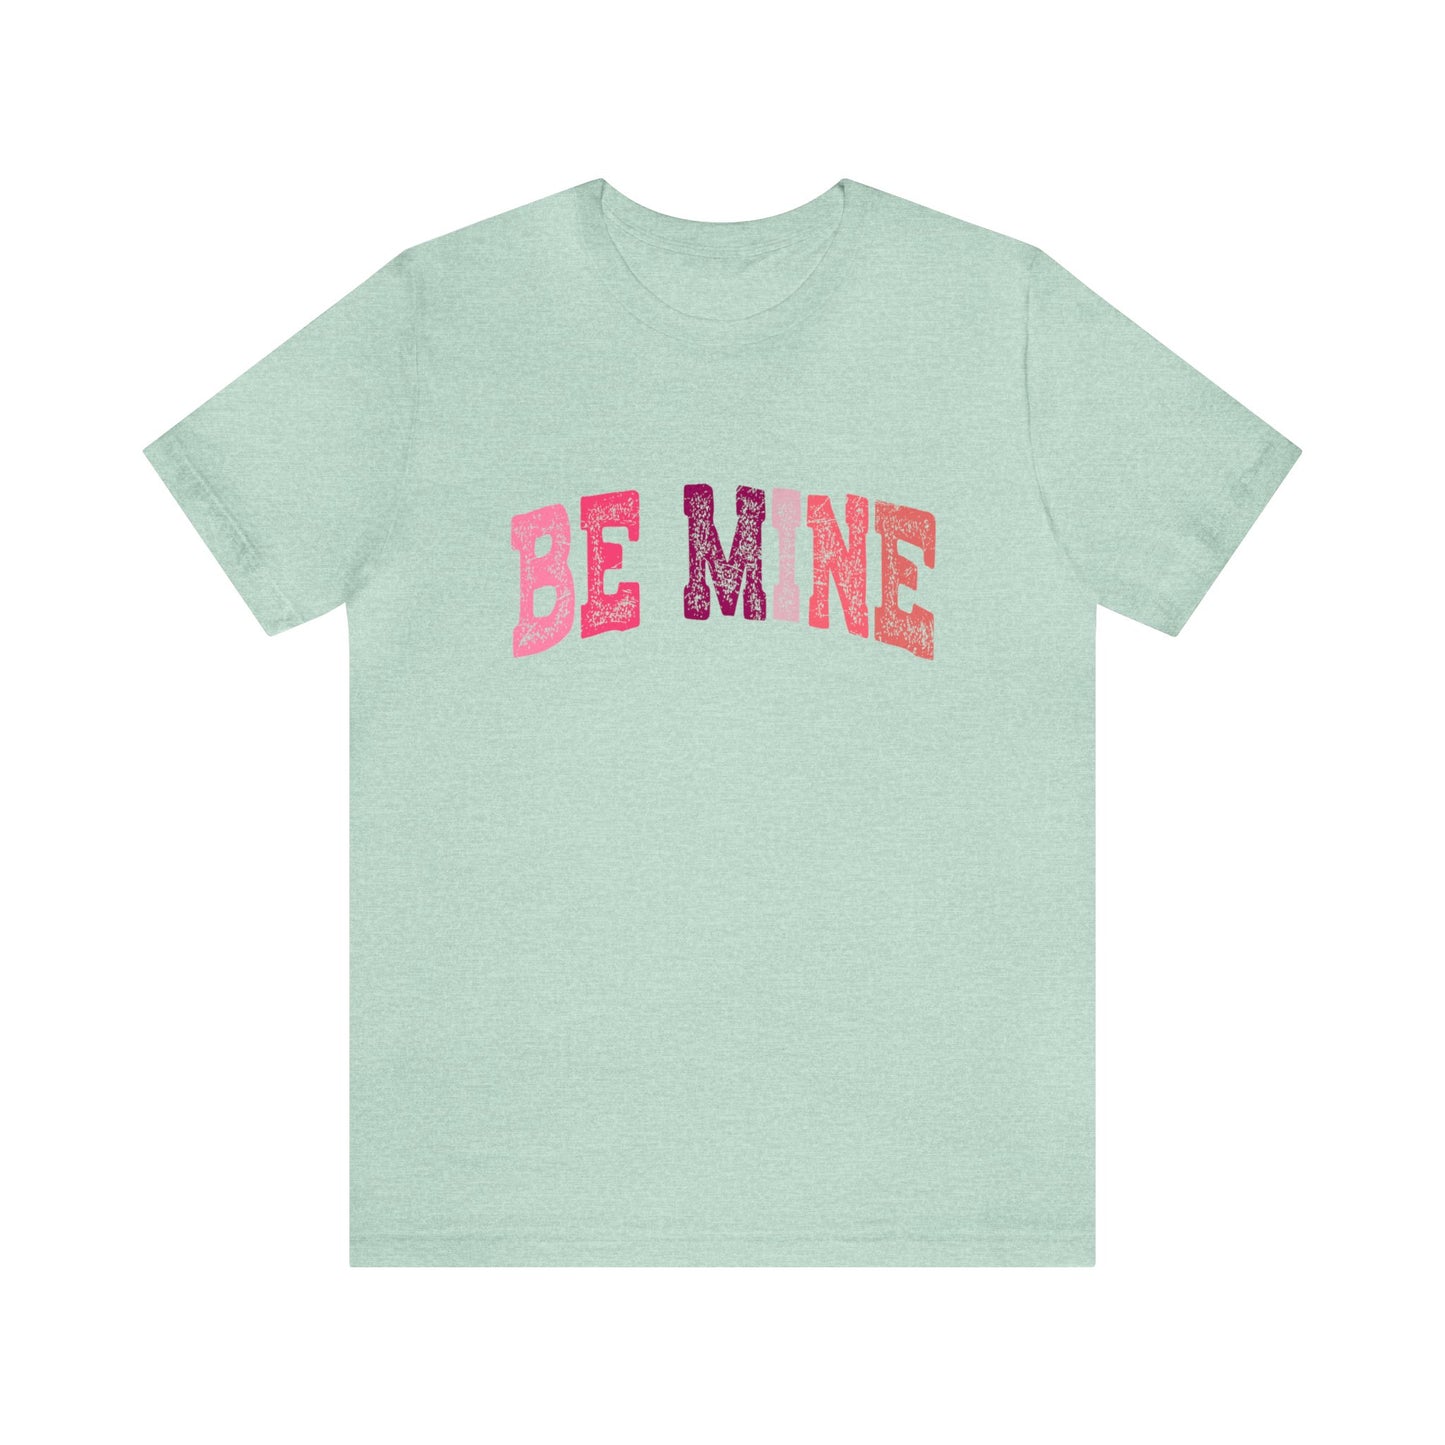 Be Mine Valentine Women's Tshirt